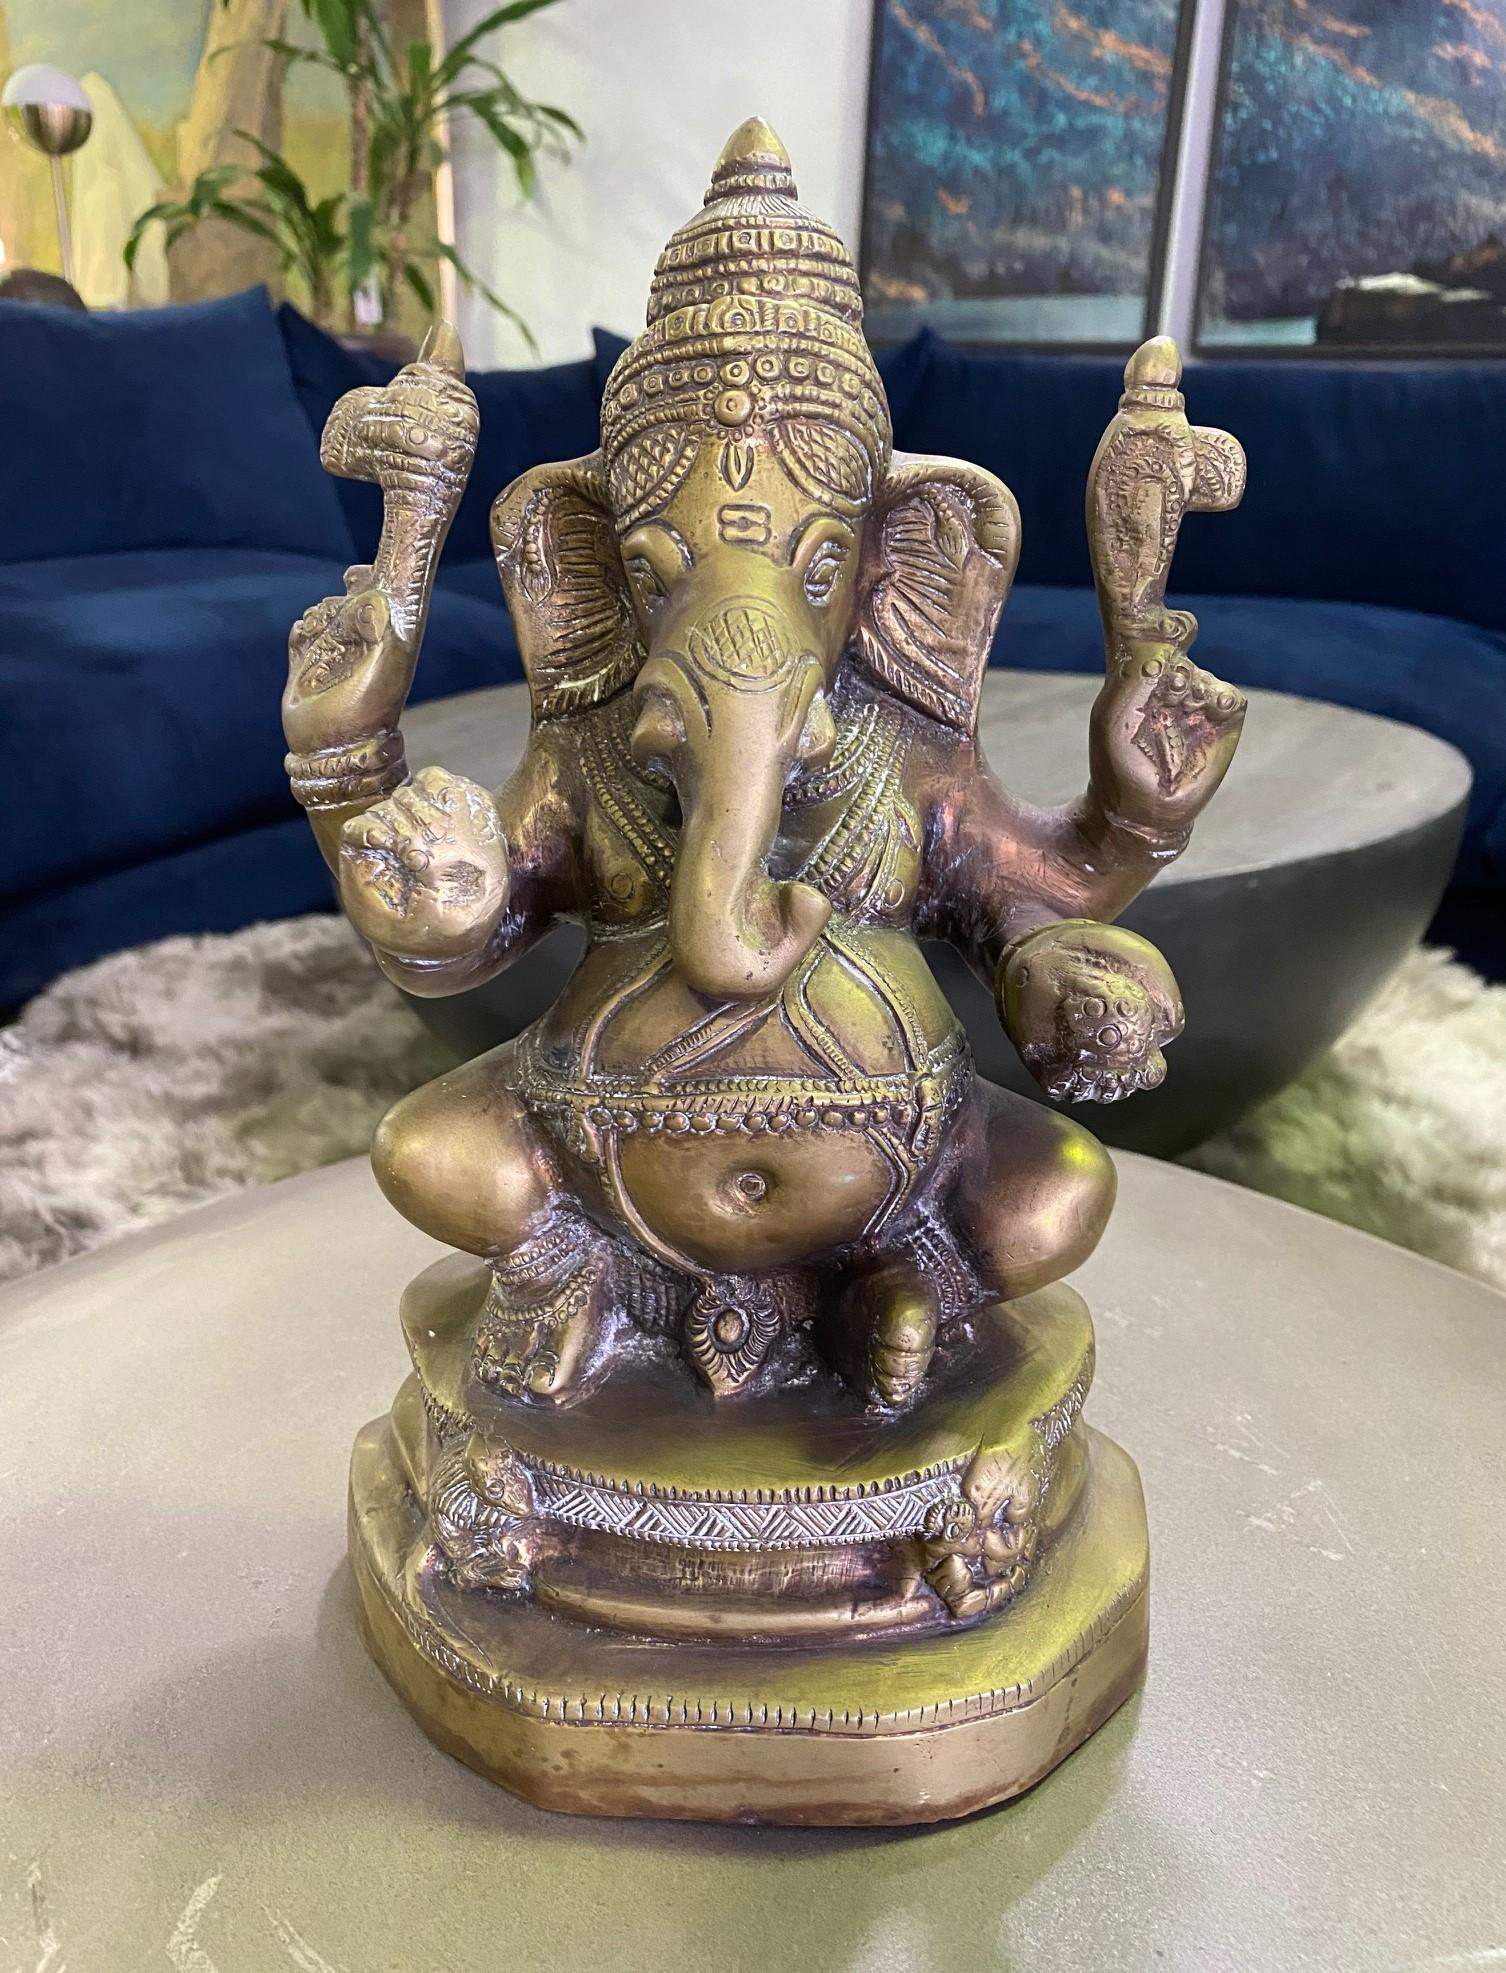 Eine wunderbar detaillierte Messingskulptur des indischen Gottes Ganesh oder Ganesha mit seinem großen, leicht erkennbaren Elefantenkopf. Ganesh ist eine der bekanntesten und am meisten verehrten Gottheiten im hinduistischen Pantheon und wird